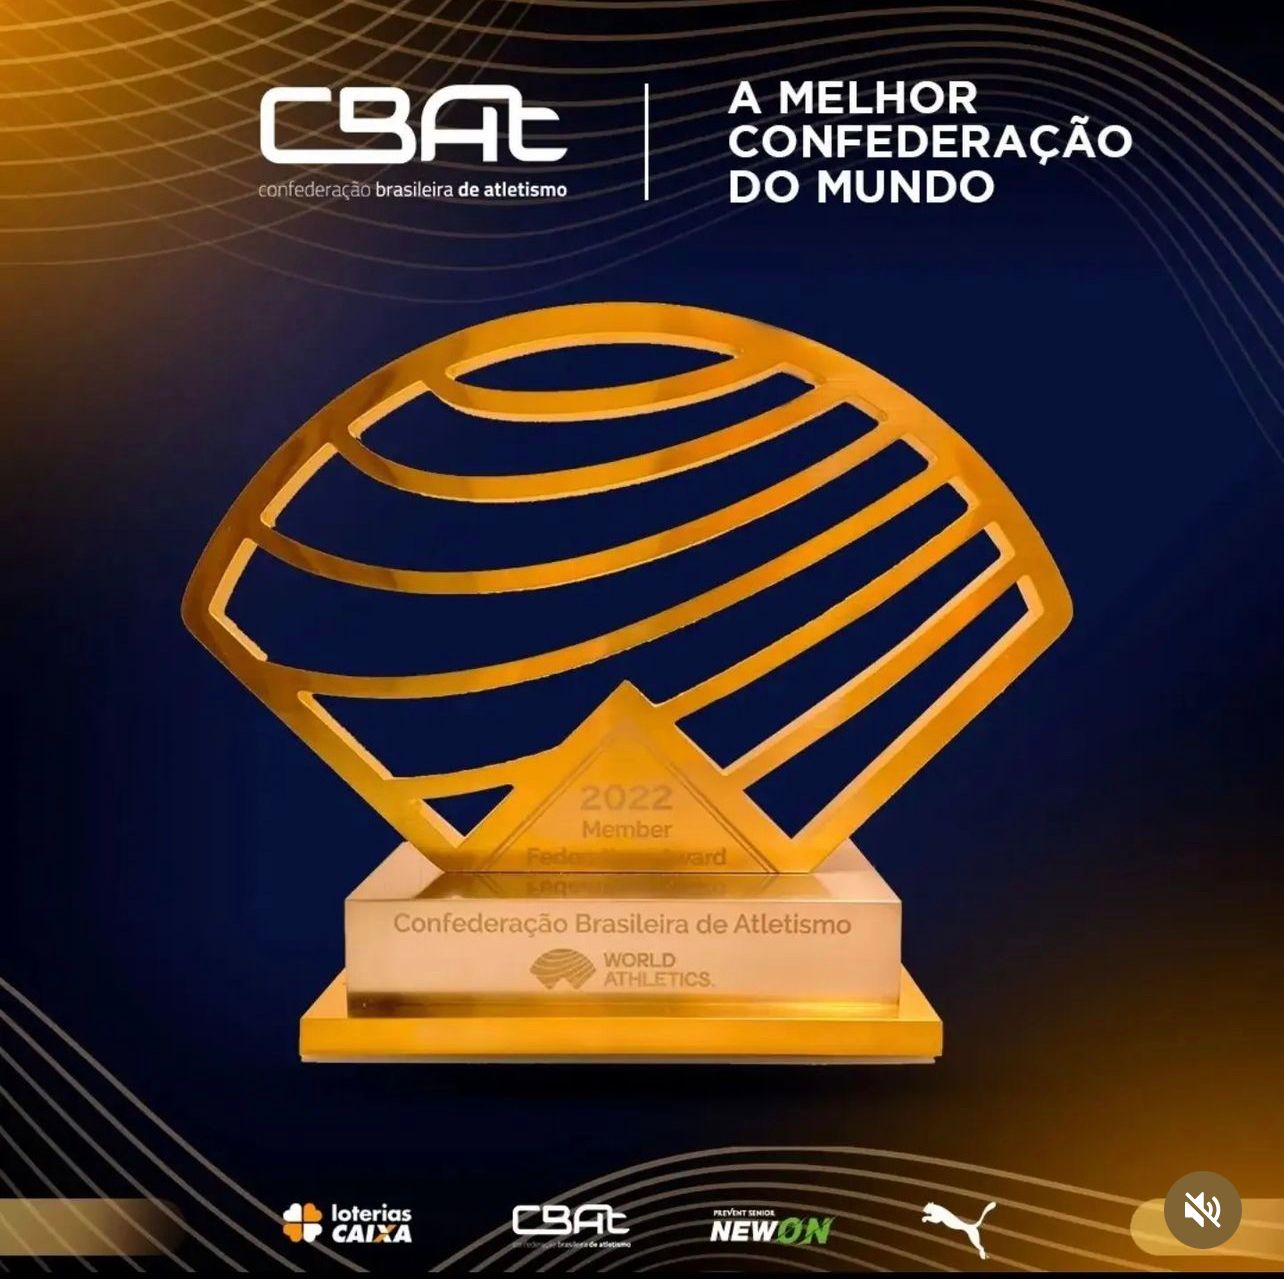 CBAt - Confederação Brasileira de Atletismo